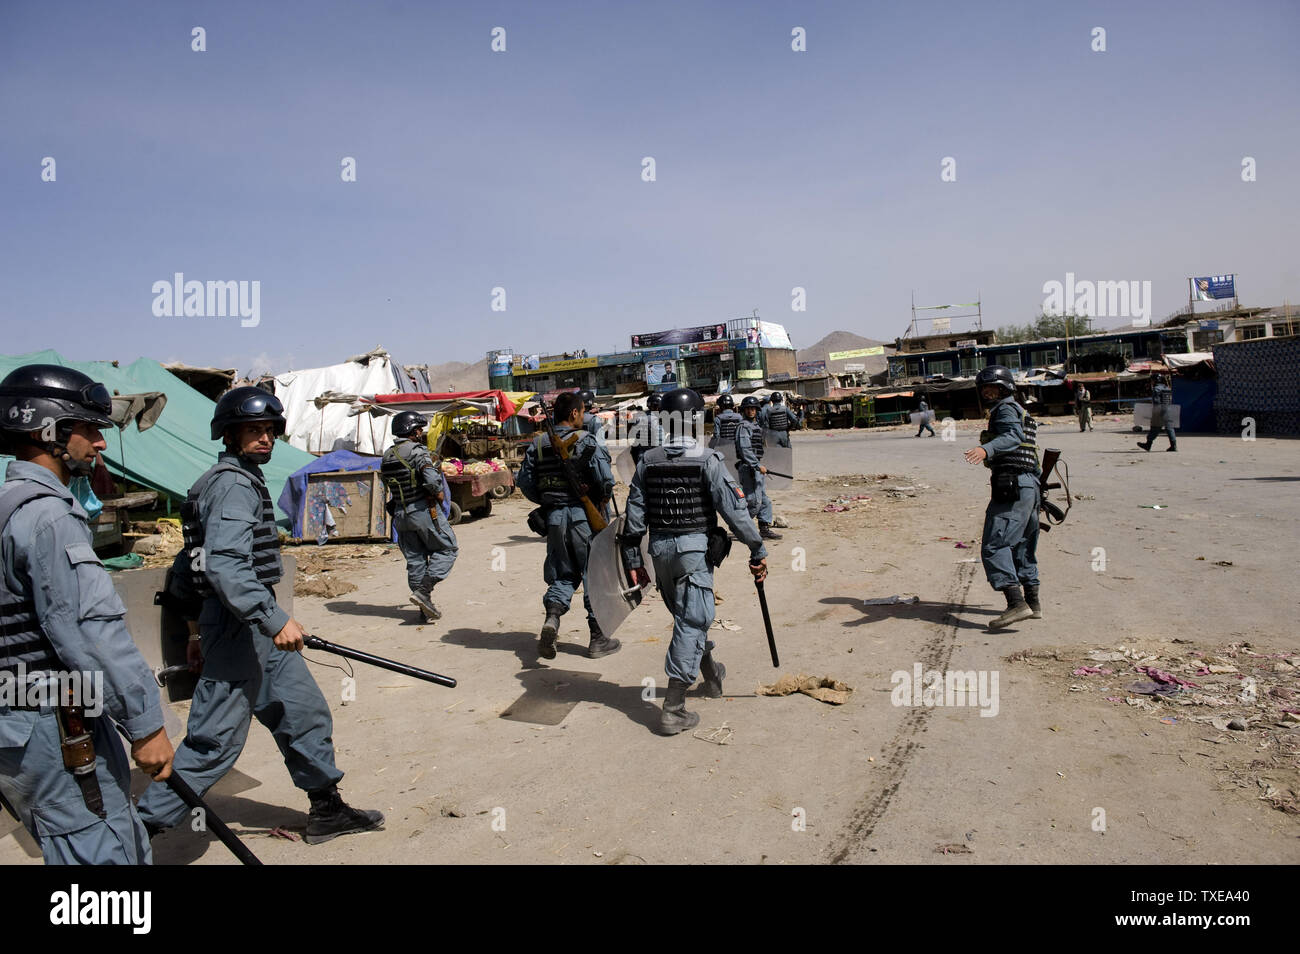 Polizia afgana pattugliare le strade durante disordini a Kabul il 15 settembre 2010. Centinaia di afgani versata su strade di Kabul per protestare contro i piani, cancellate giorni fa da un pastore di noi per masterizzare copie del Corano, funzionari e testimoni ha detto. I dimostranti hanno lanciato pietre contro poliziotti antisommossa dopo gli ufficiali hanno impedito loro di marciare verso il centro della città, un ministero degli interni portavoce ha detto. UPI Foto Stock